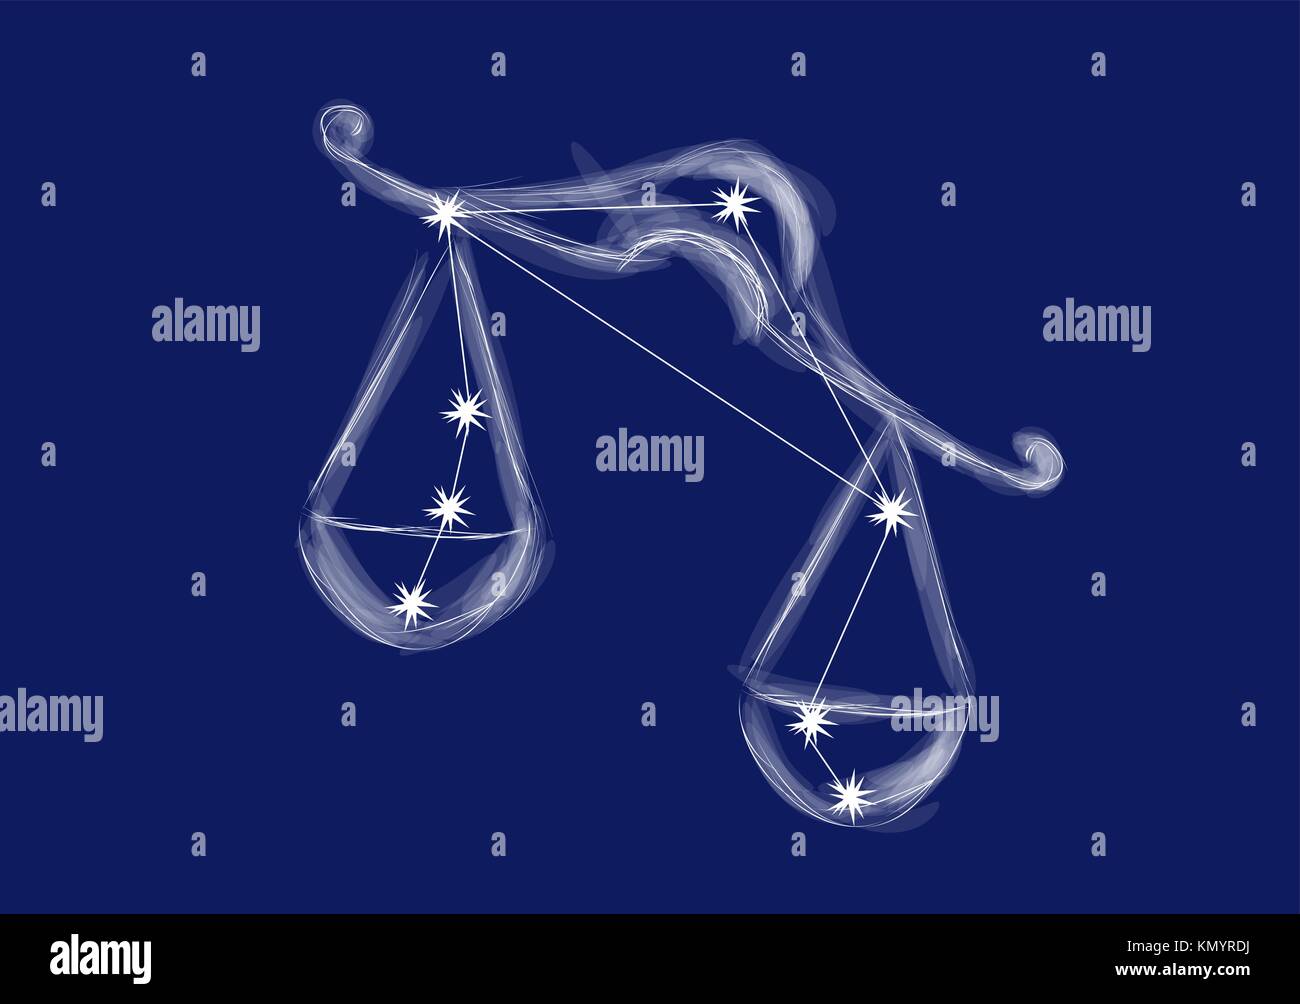 Bilancia segno abstract segno zodiacale su sfondo blu Immagine e Vettoriale  - Alamy